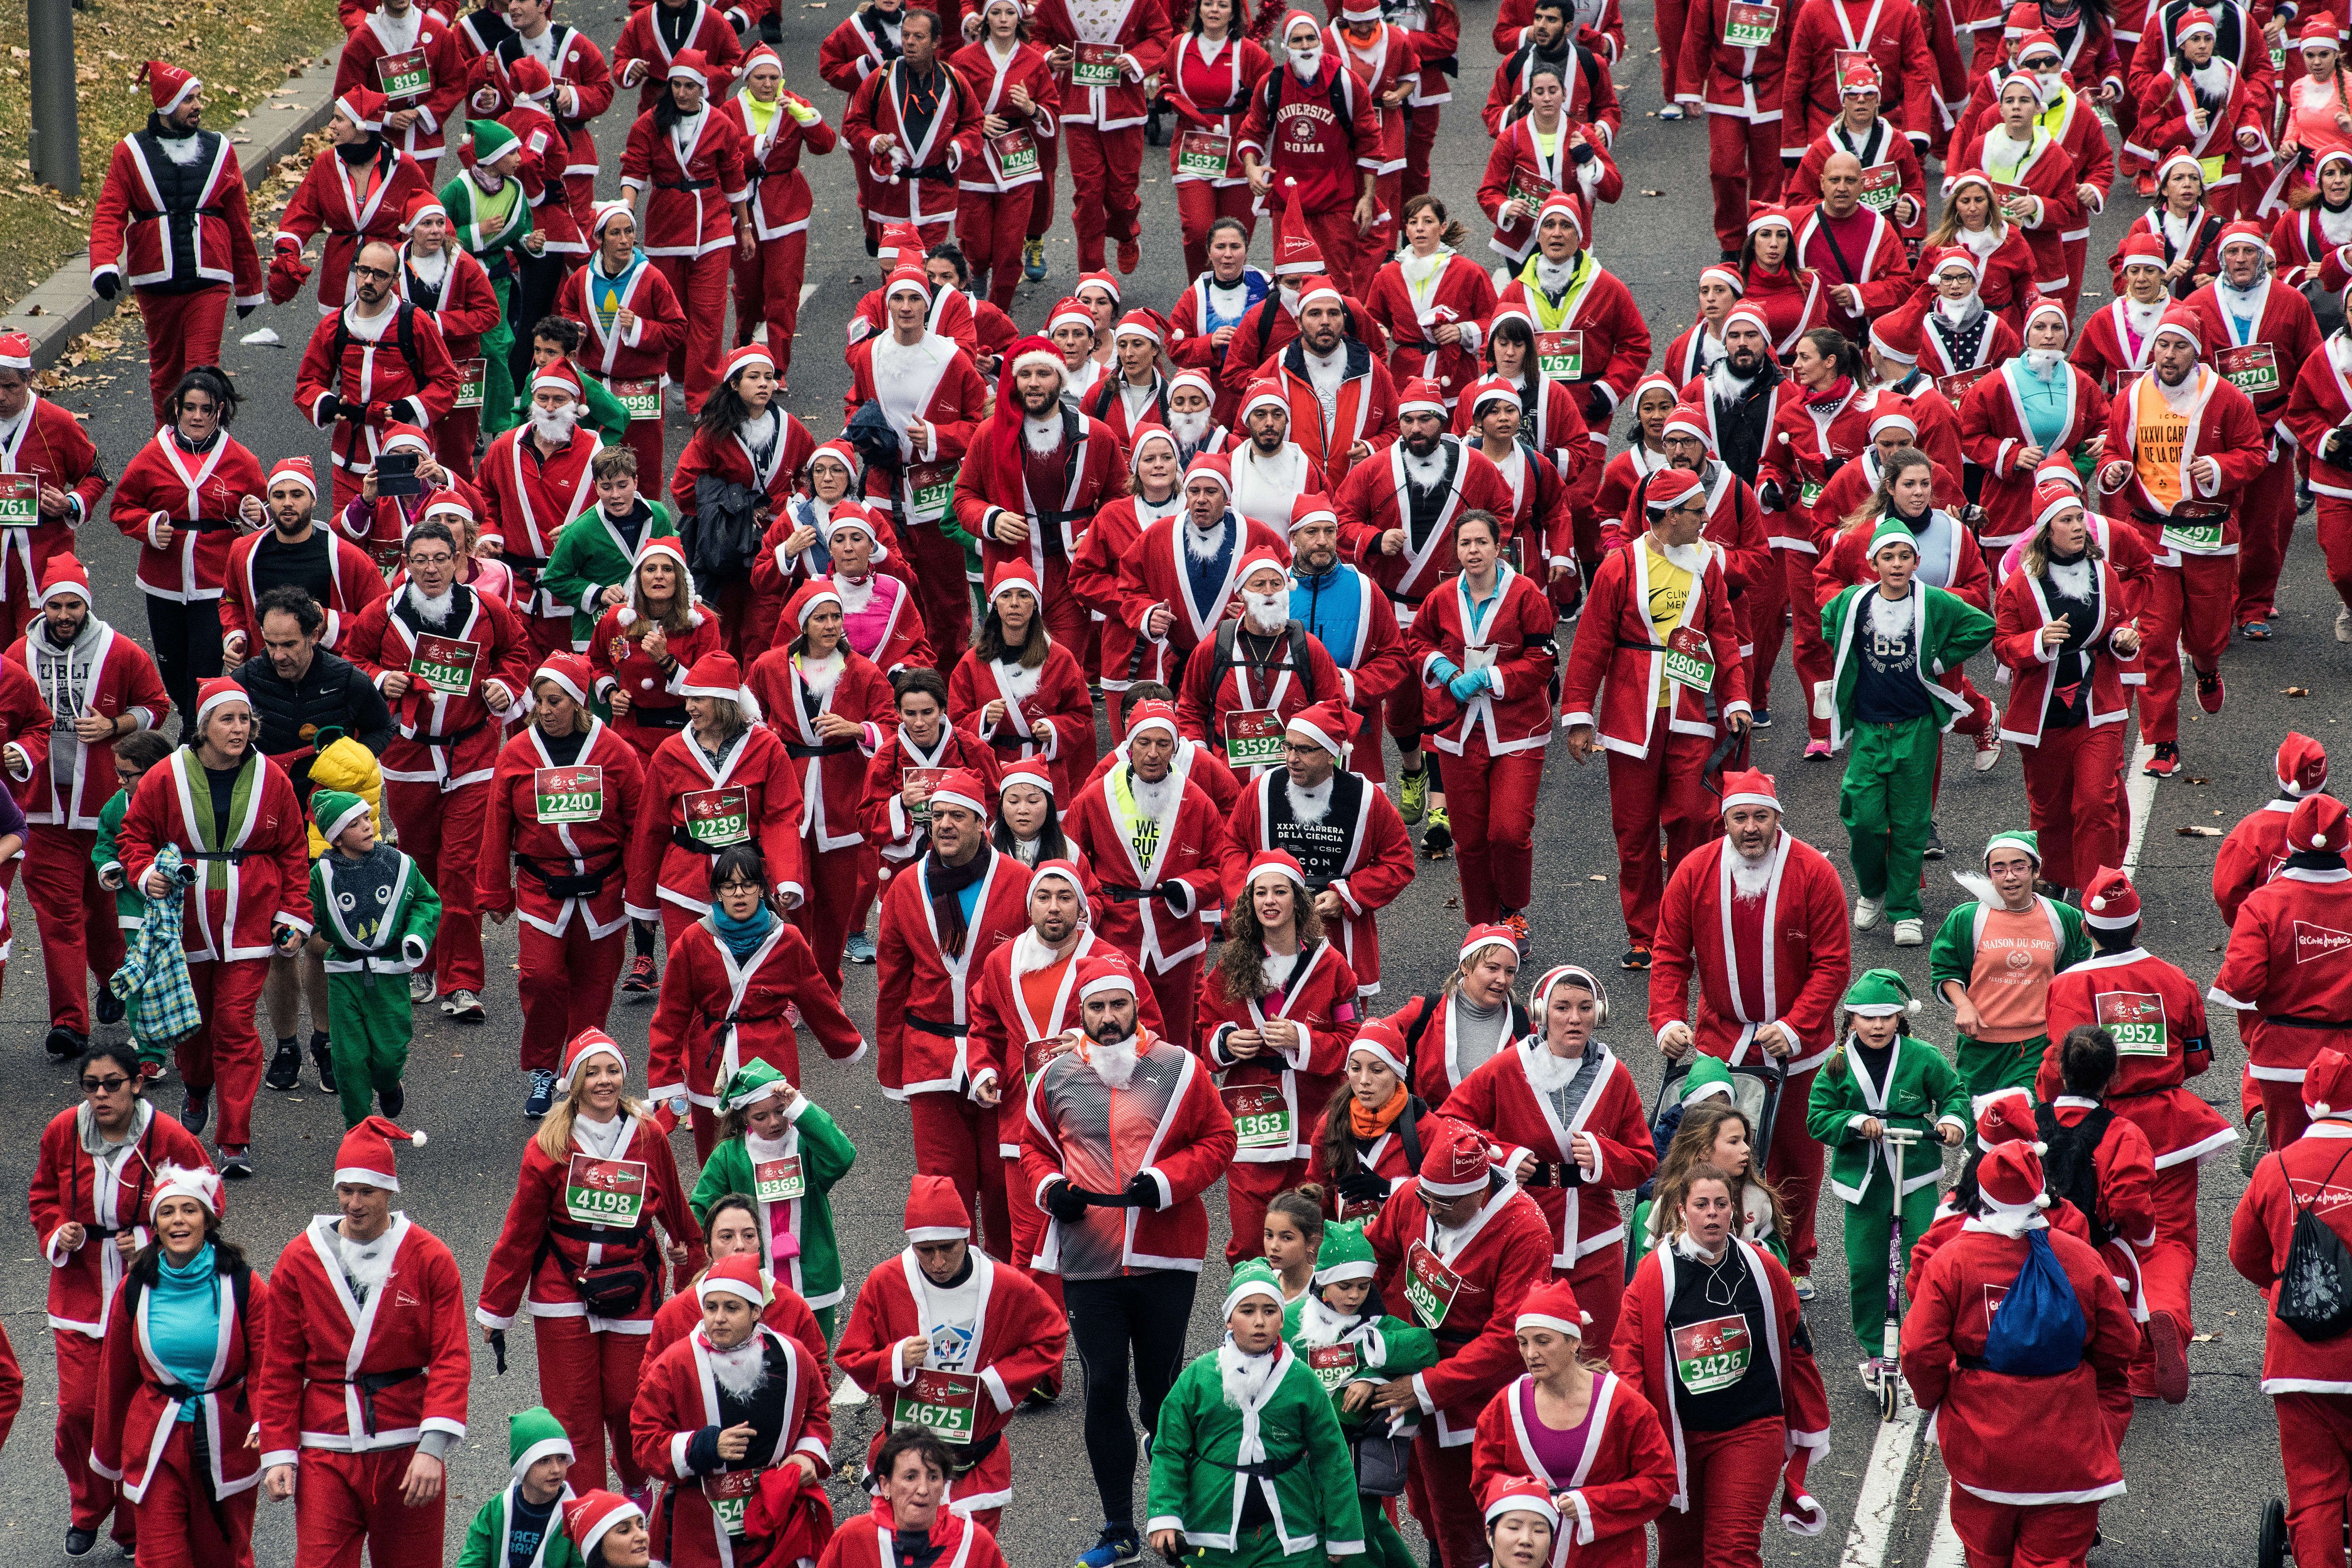 Сотни Санта-Клаусов пробежали по Мадриду, чтобы помочь пострадавшим жителям Канар